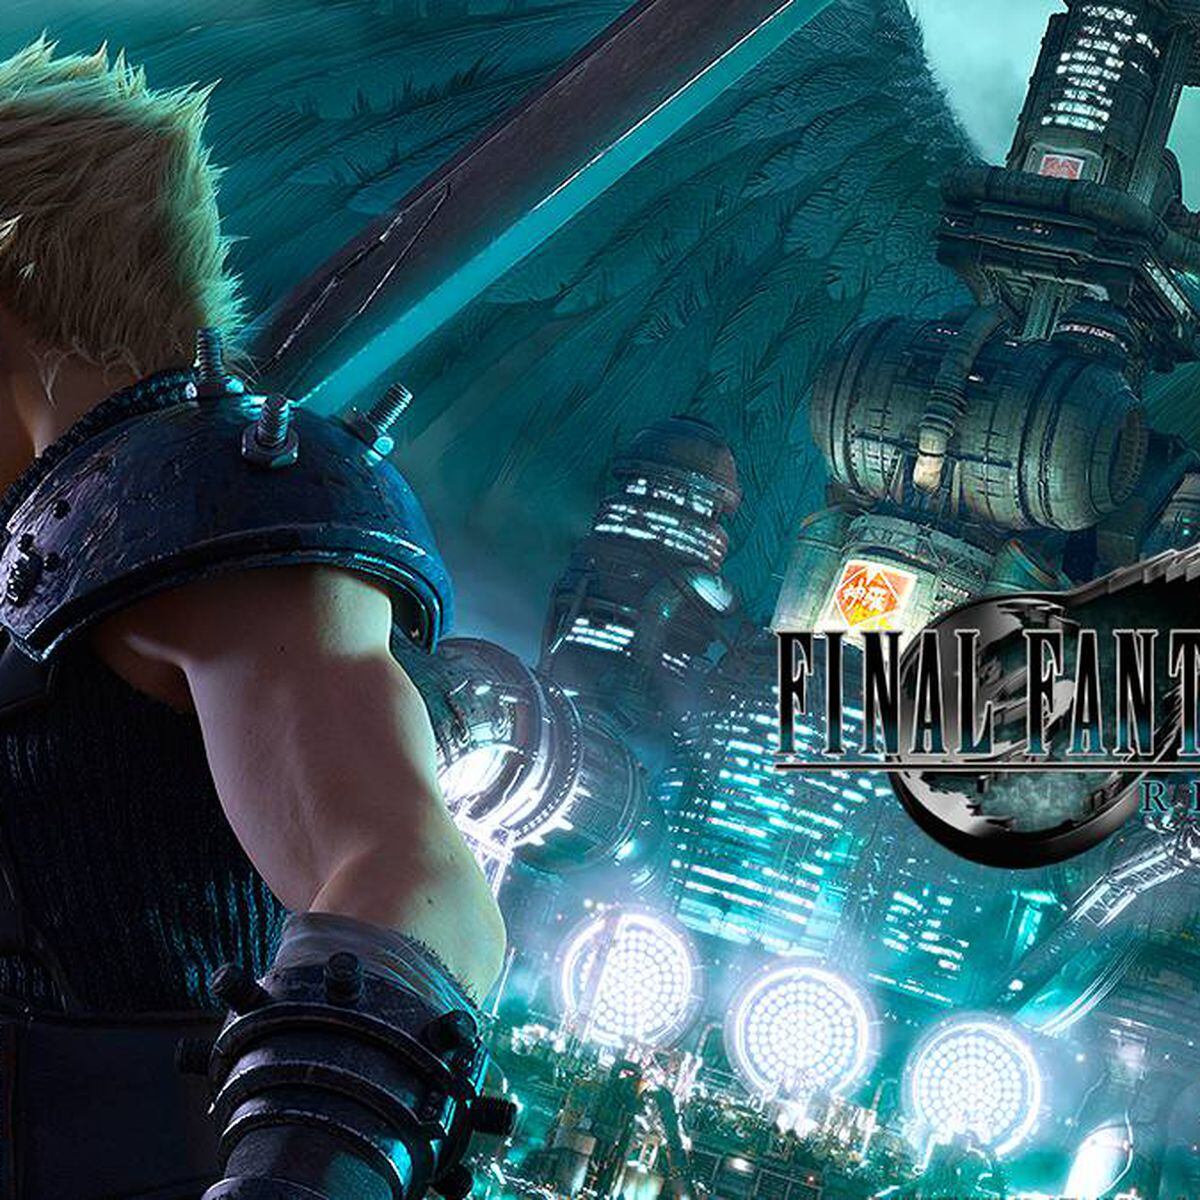 Final Fantasy VII Remake genera consenso: notas muy positivas por la  comunidad - Meristation